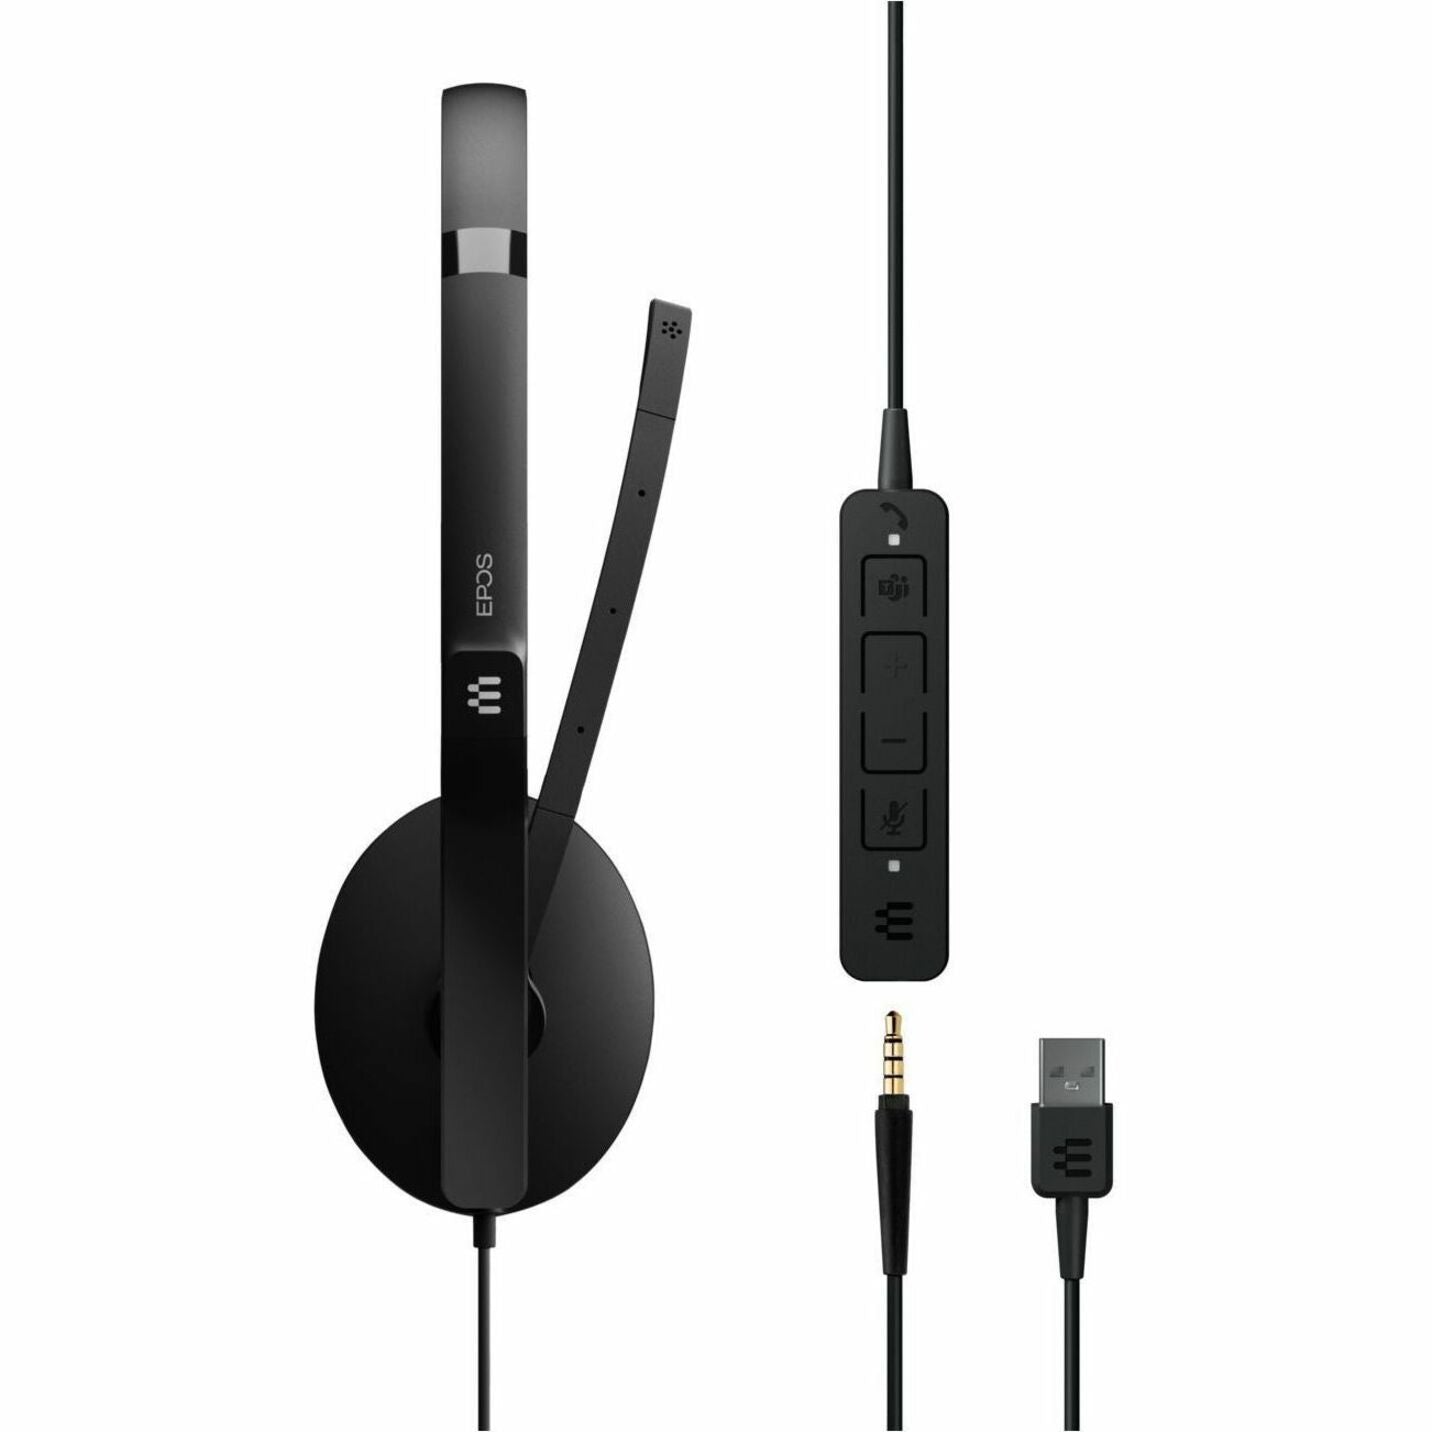 EPOS | SENNHEISER Adattare 165T USB II On-ear USB-C Cuffia con Controllo delle Chiamate in Linea Discontinuato